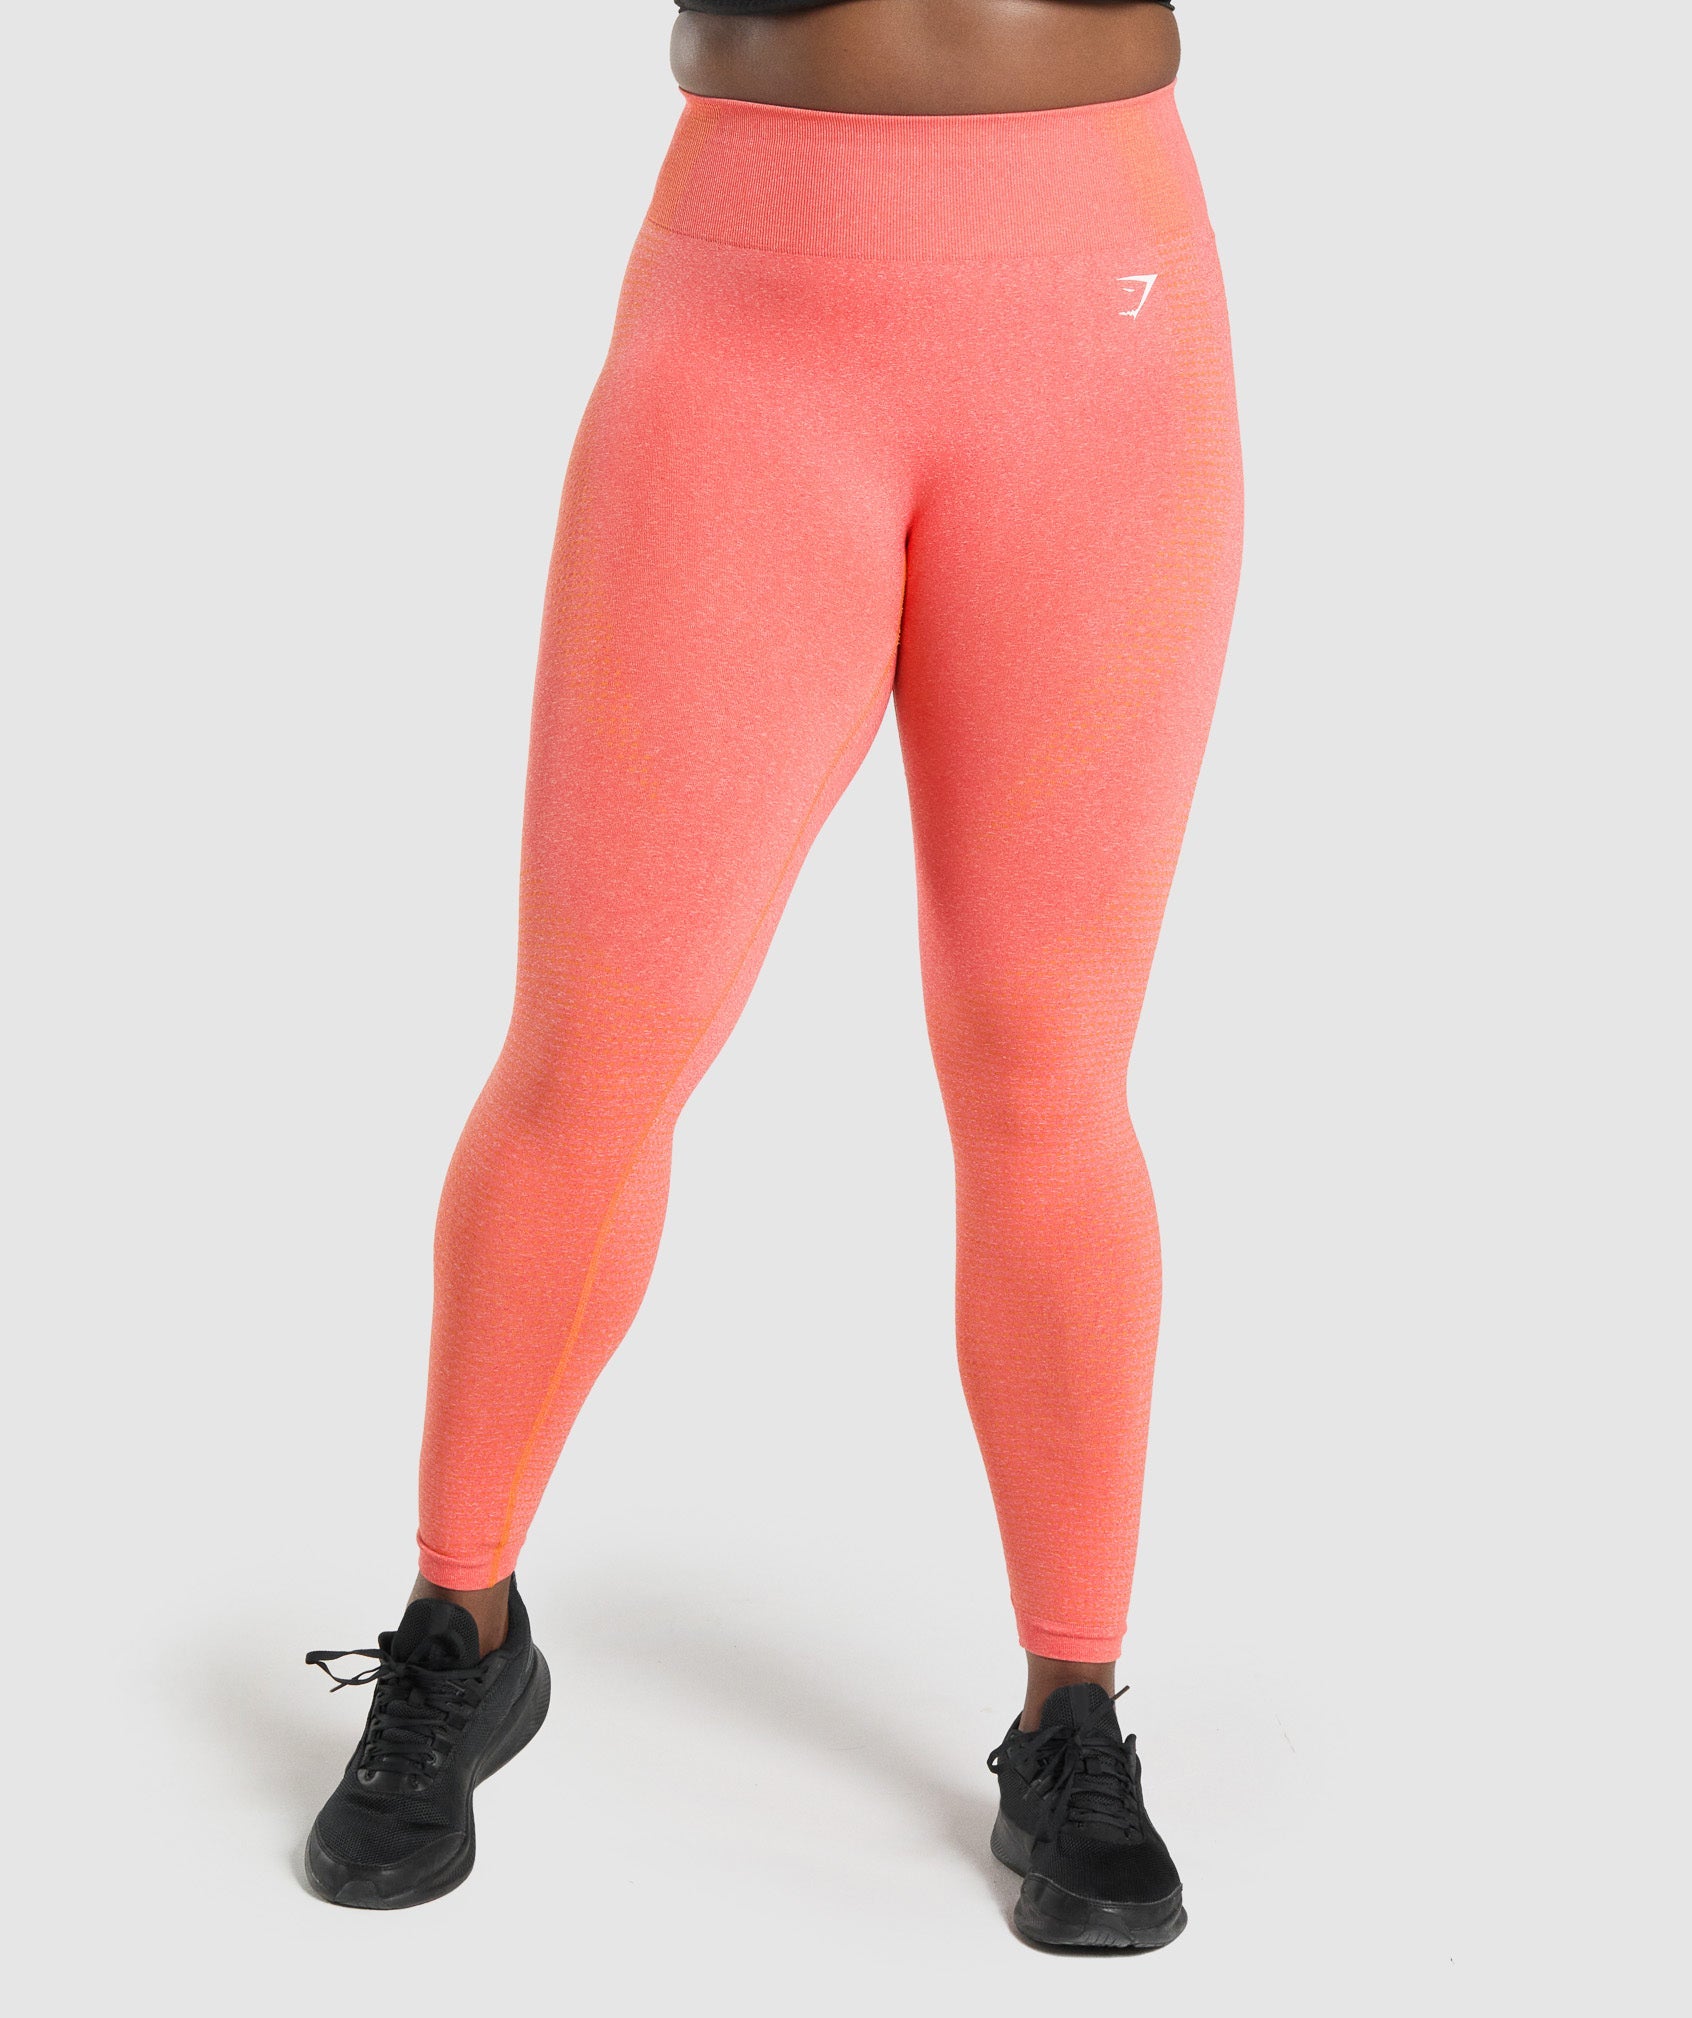 Inspire Seamless Sports Leggings - Ochre Orange – Bamae